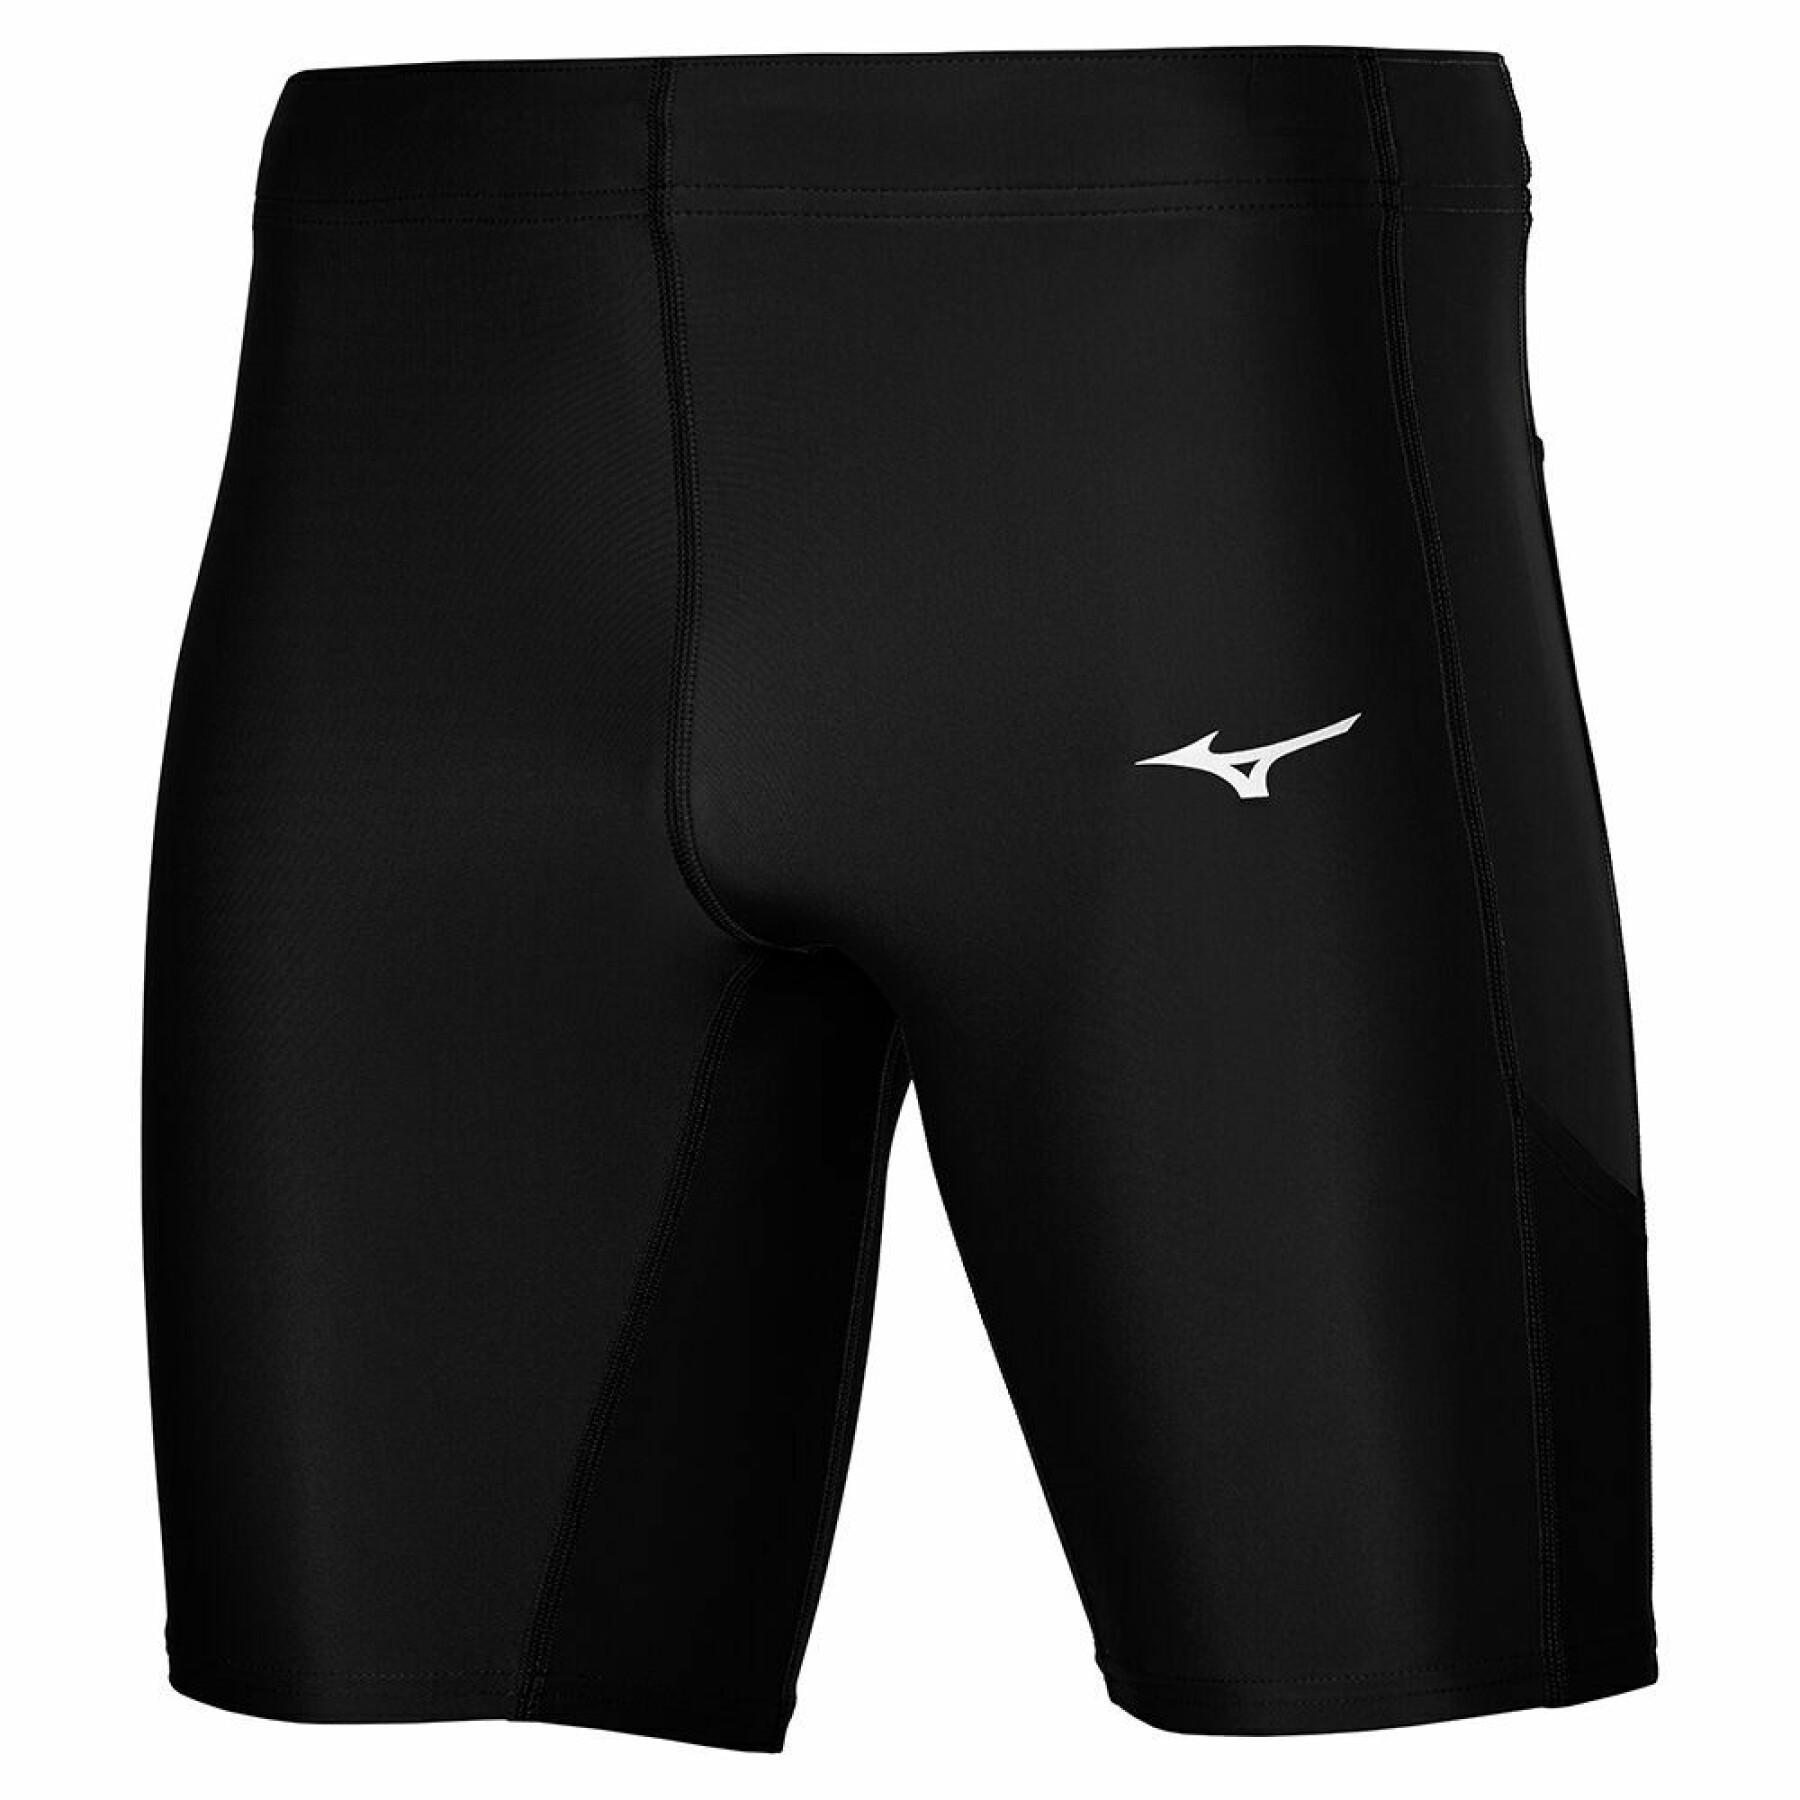 Mid shorts Mizuno Core - Shorts / Shorts - Compression - Mens Clothing